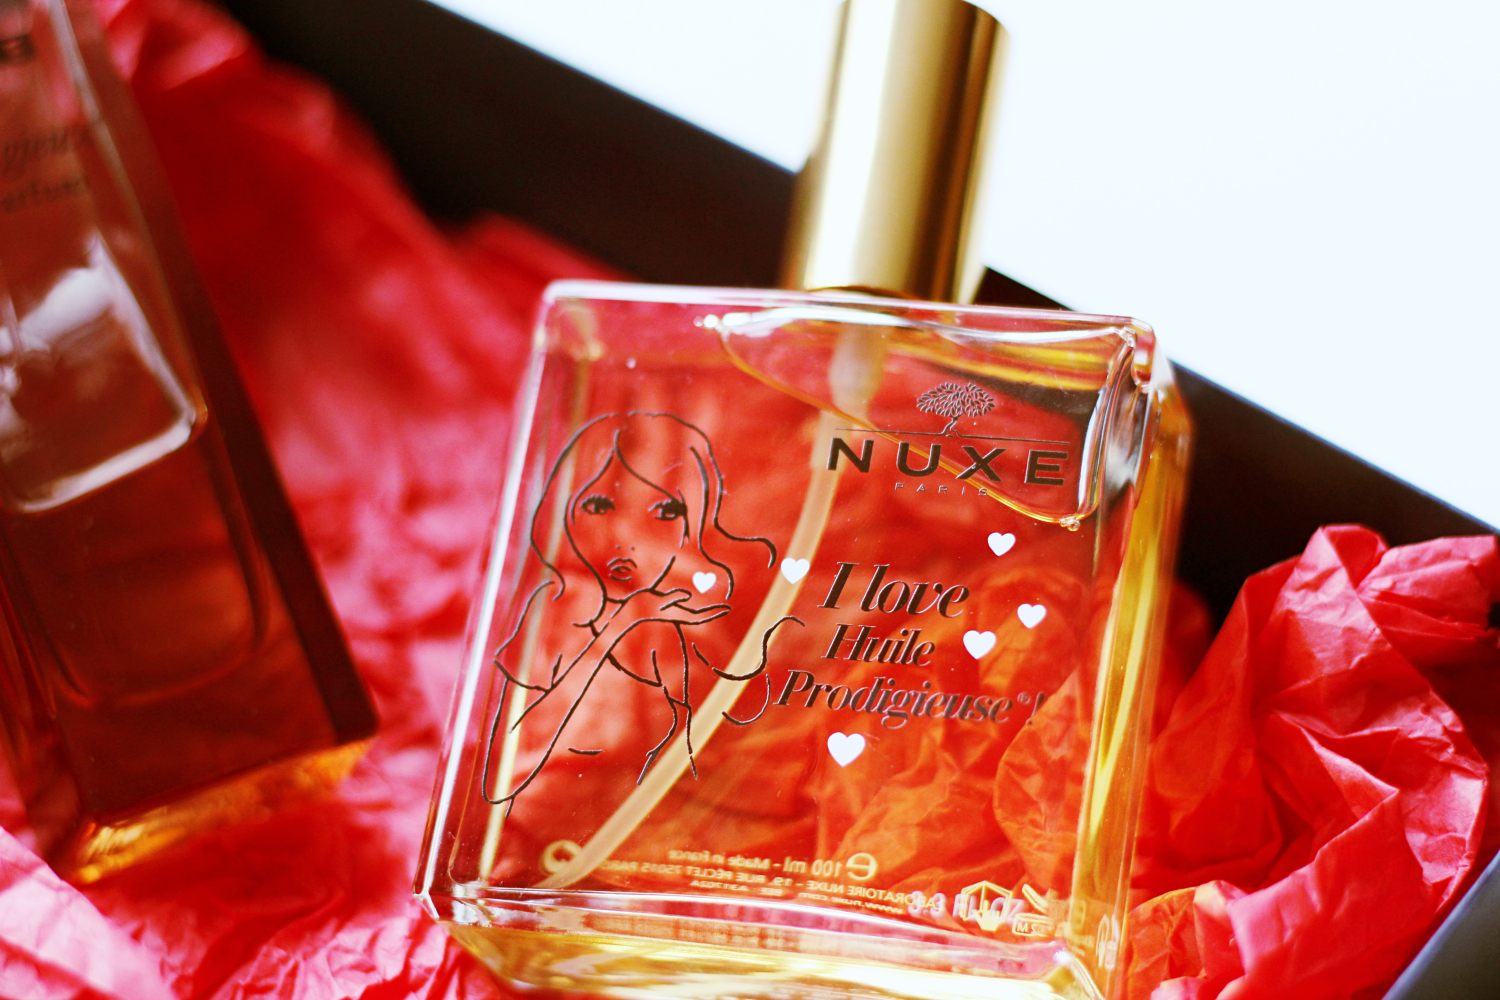 Nuxe Huile Prodigieuse & Prodigieux le parfum review by www.quitealooker.com